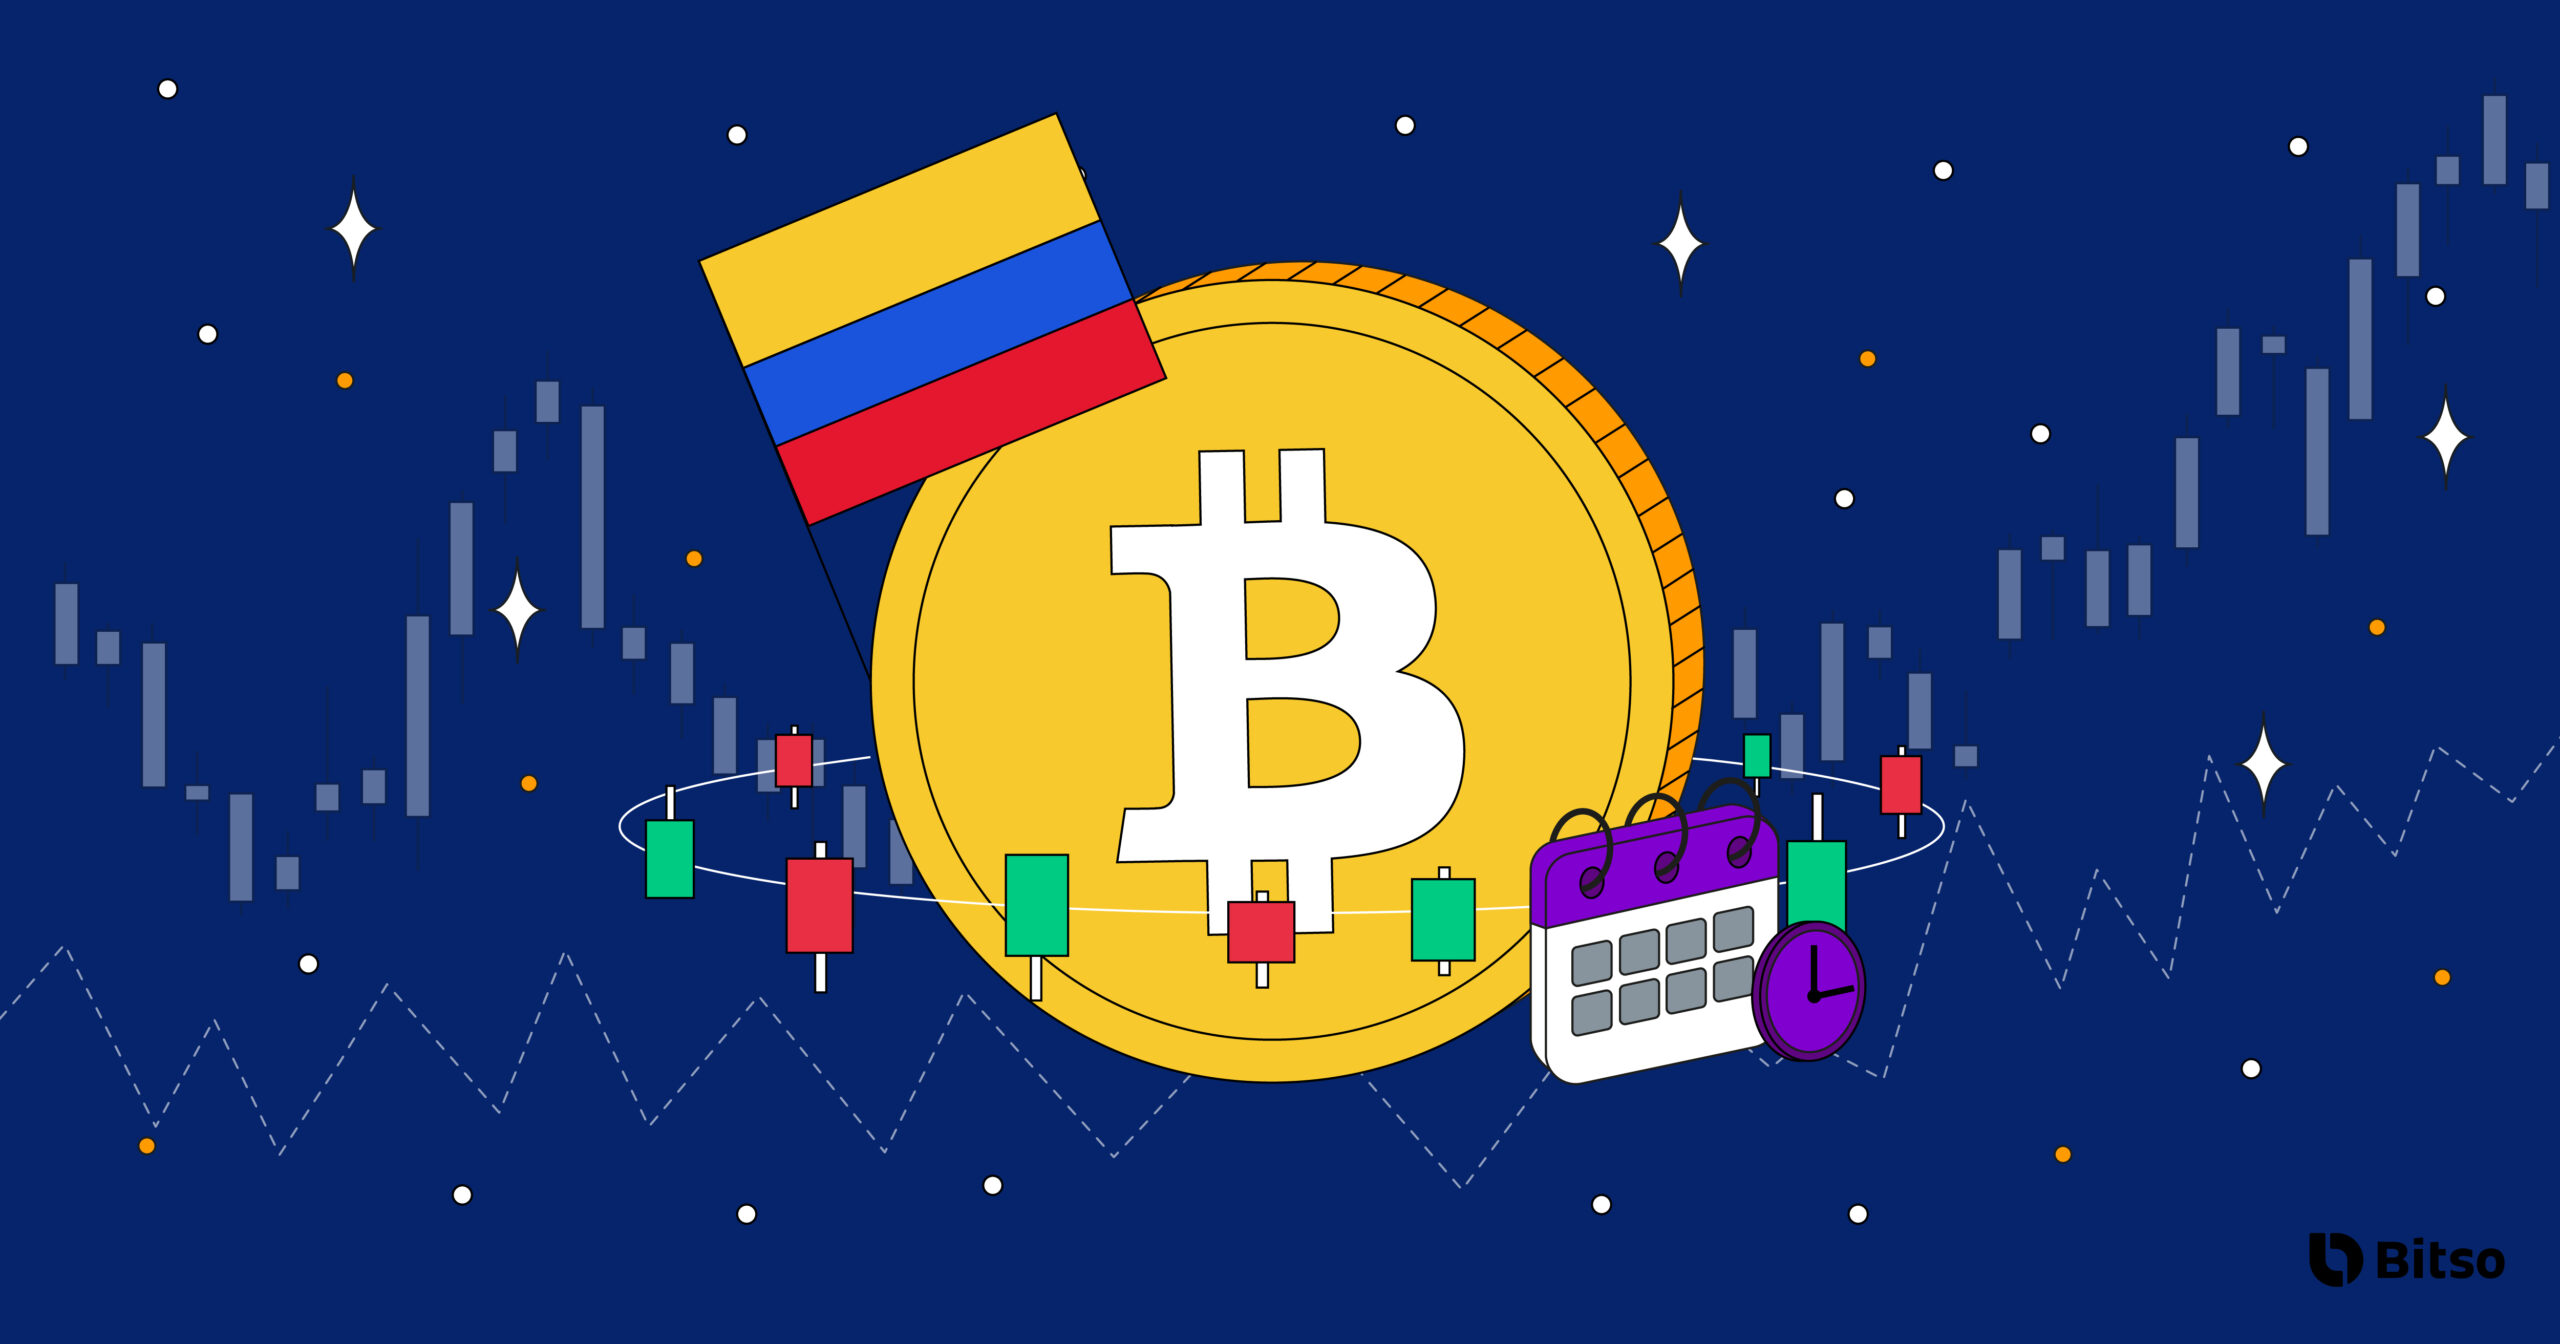 cuál es el precio del bitcoin hoy en colombia